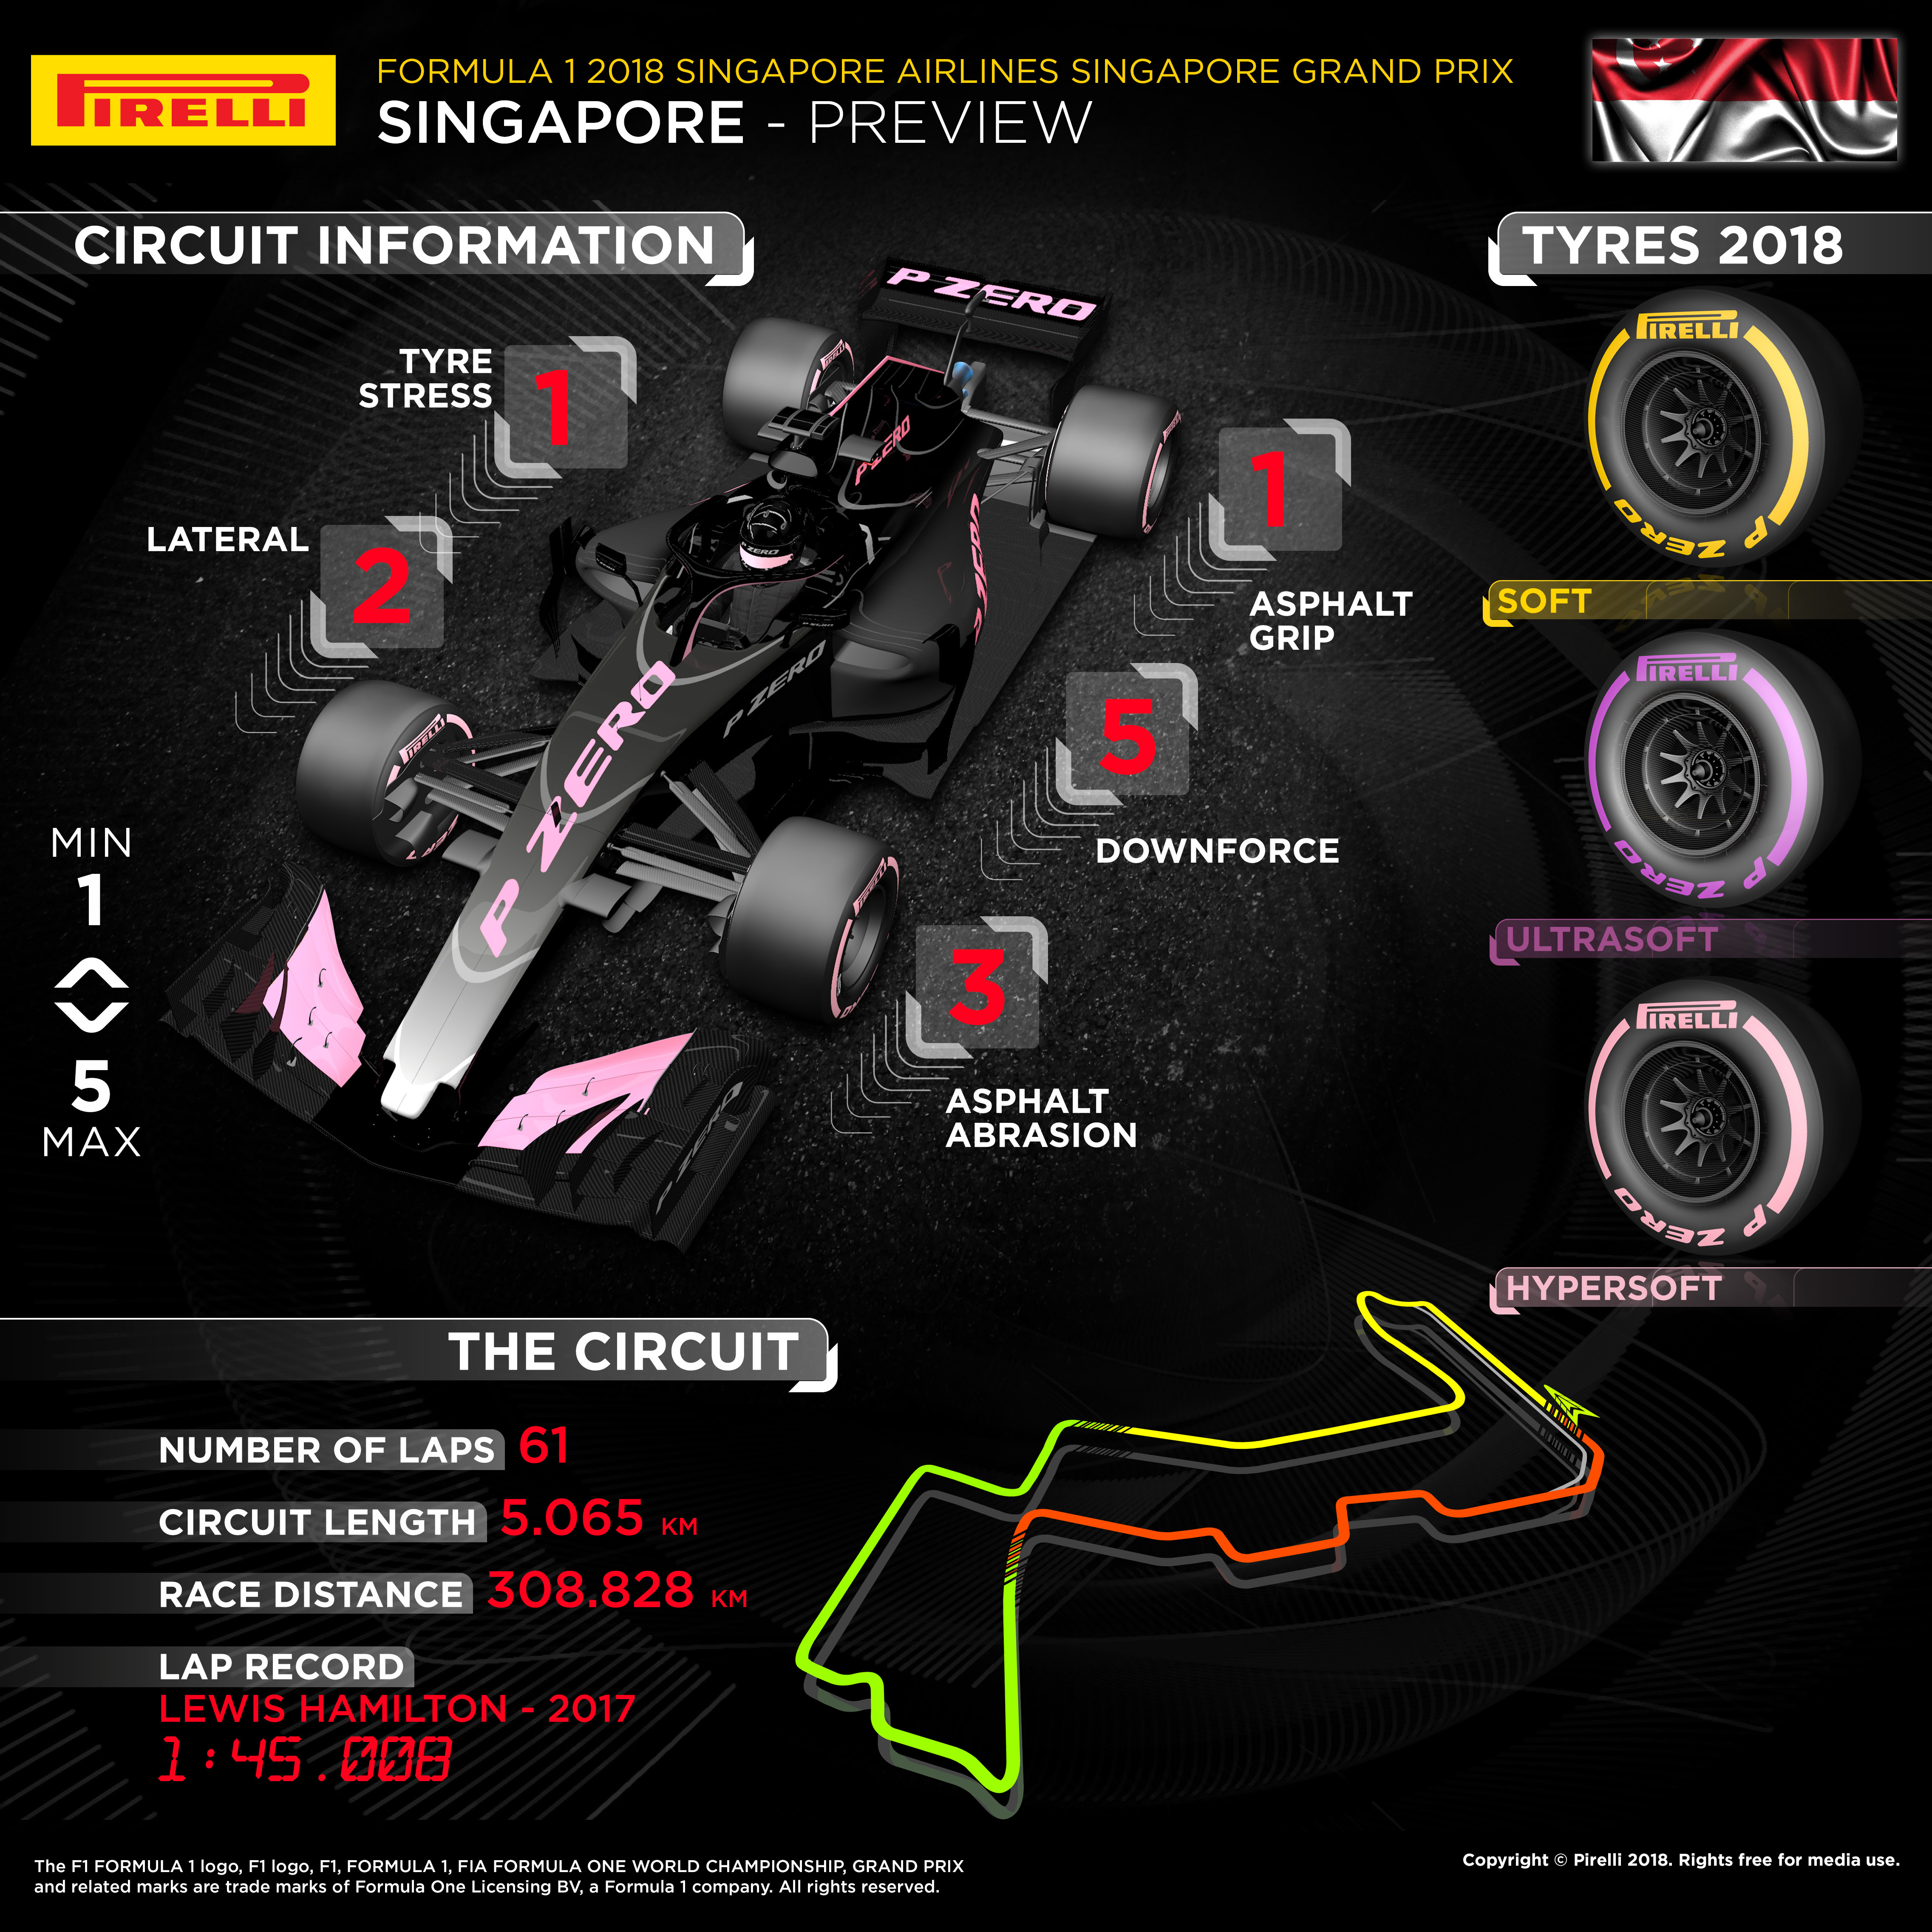 كل ما تحتاج معرفته عن جائزة سنغافورة الكبرى للفورمولا 1 7